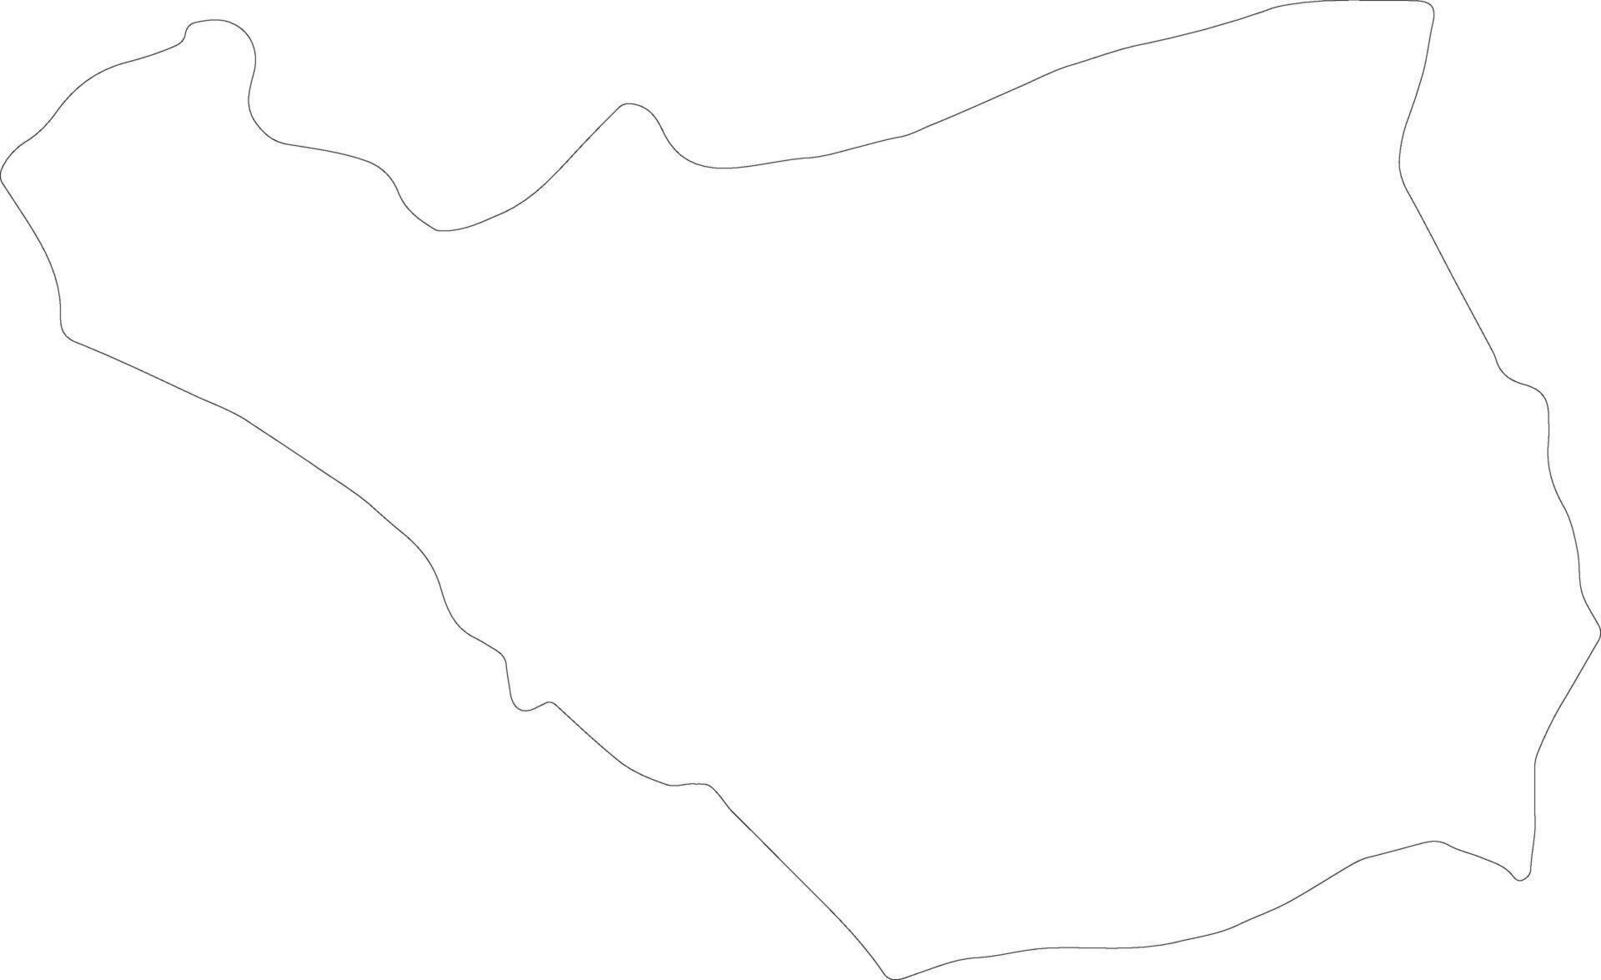 ararat Armenië schets kaart vector